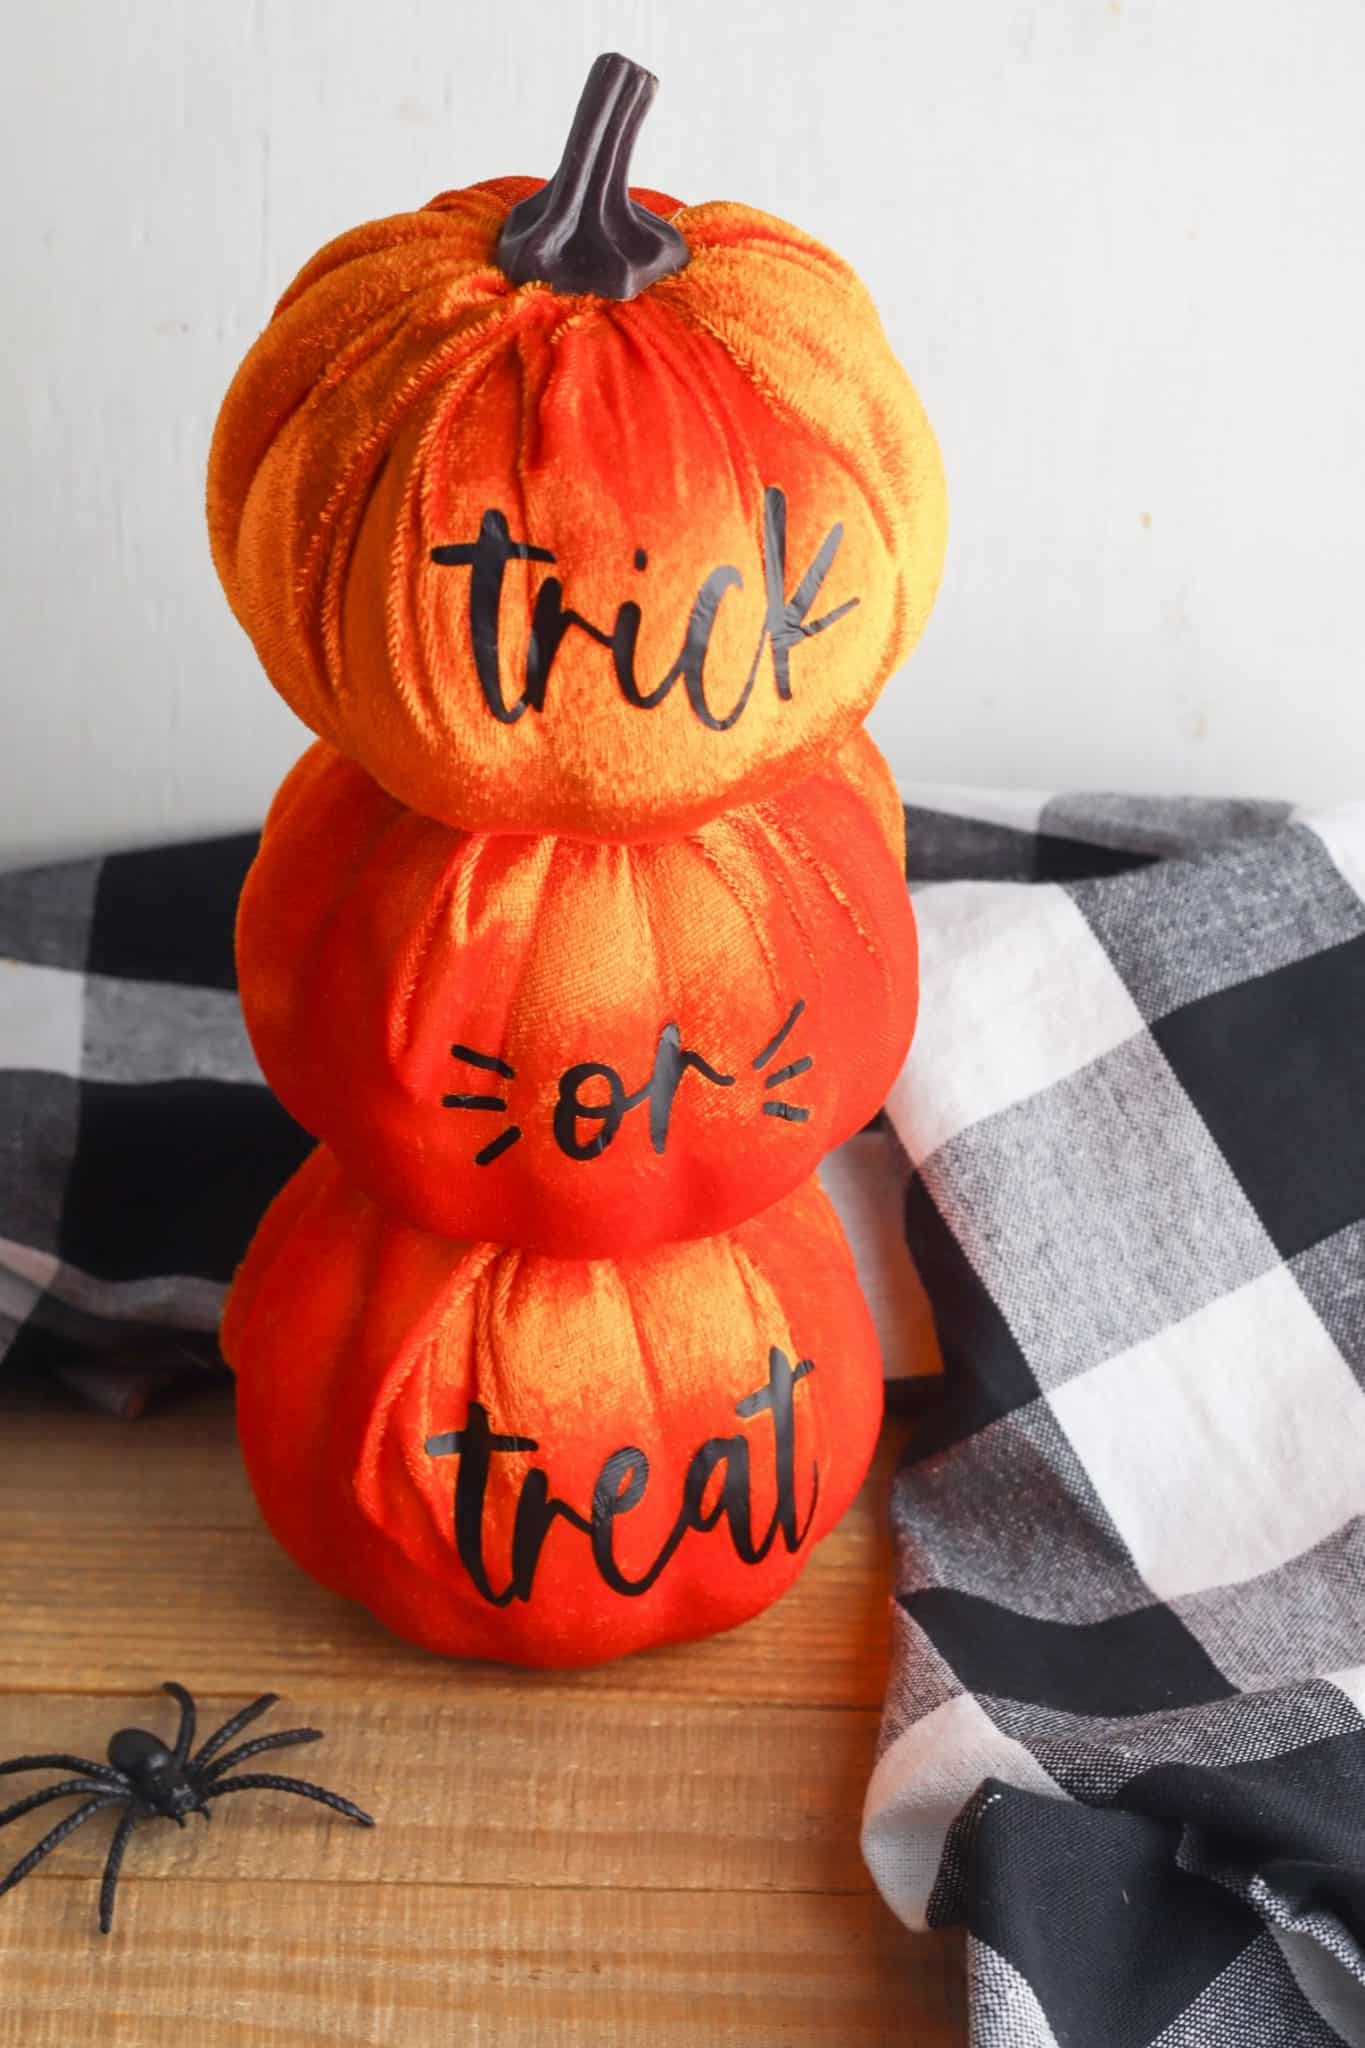 trick or treat pumpkins